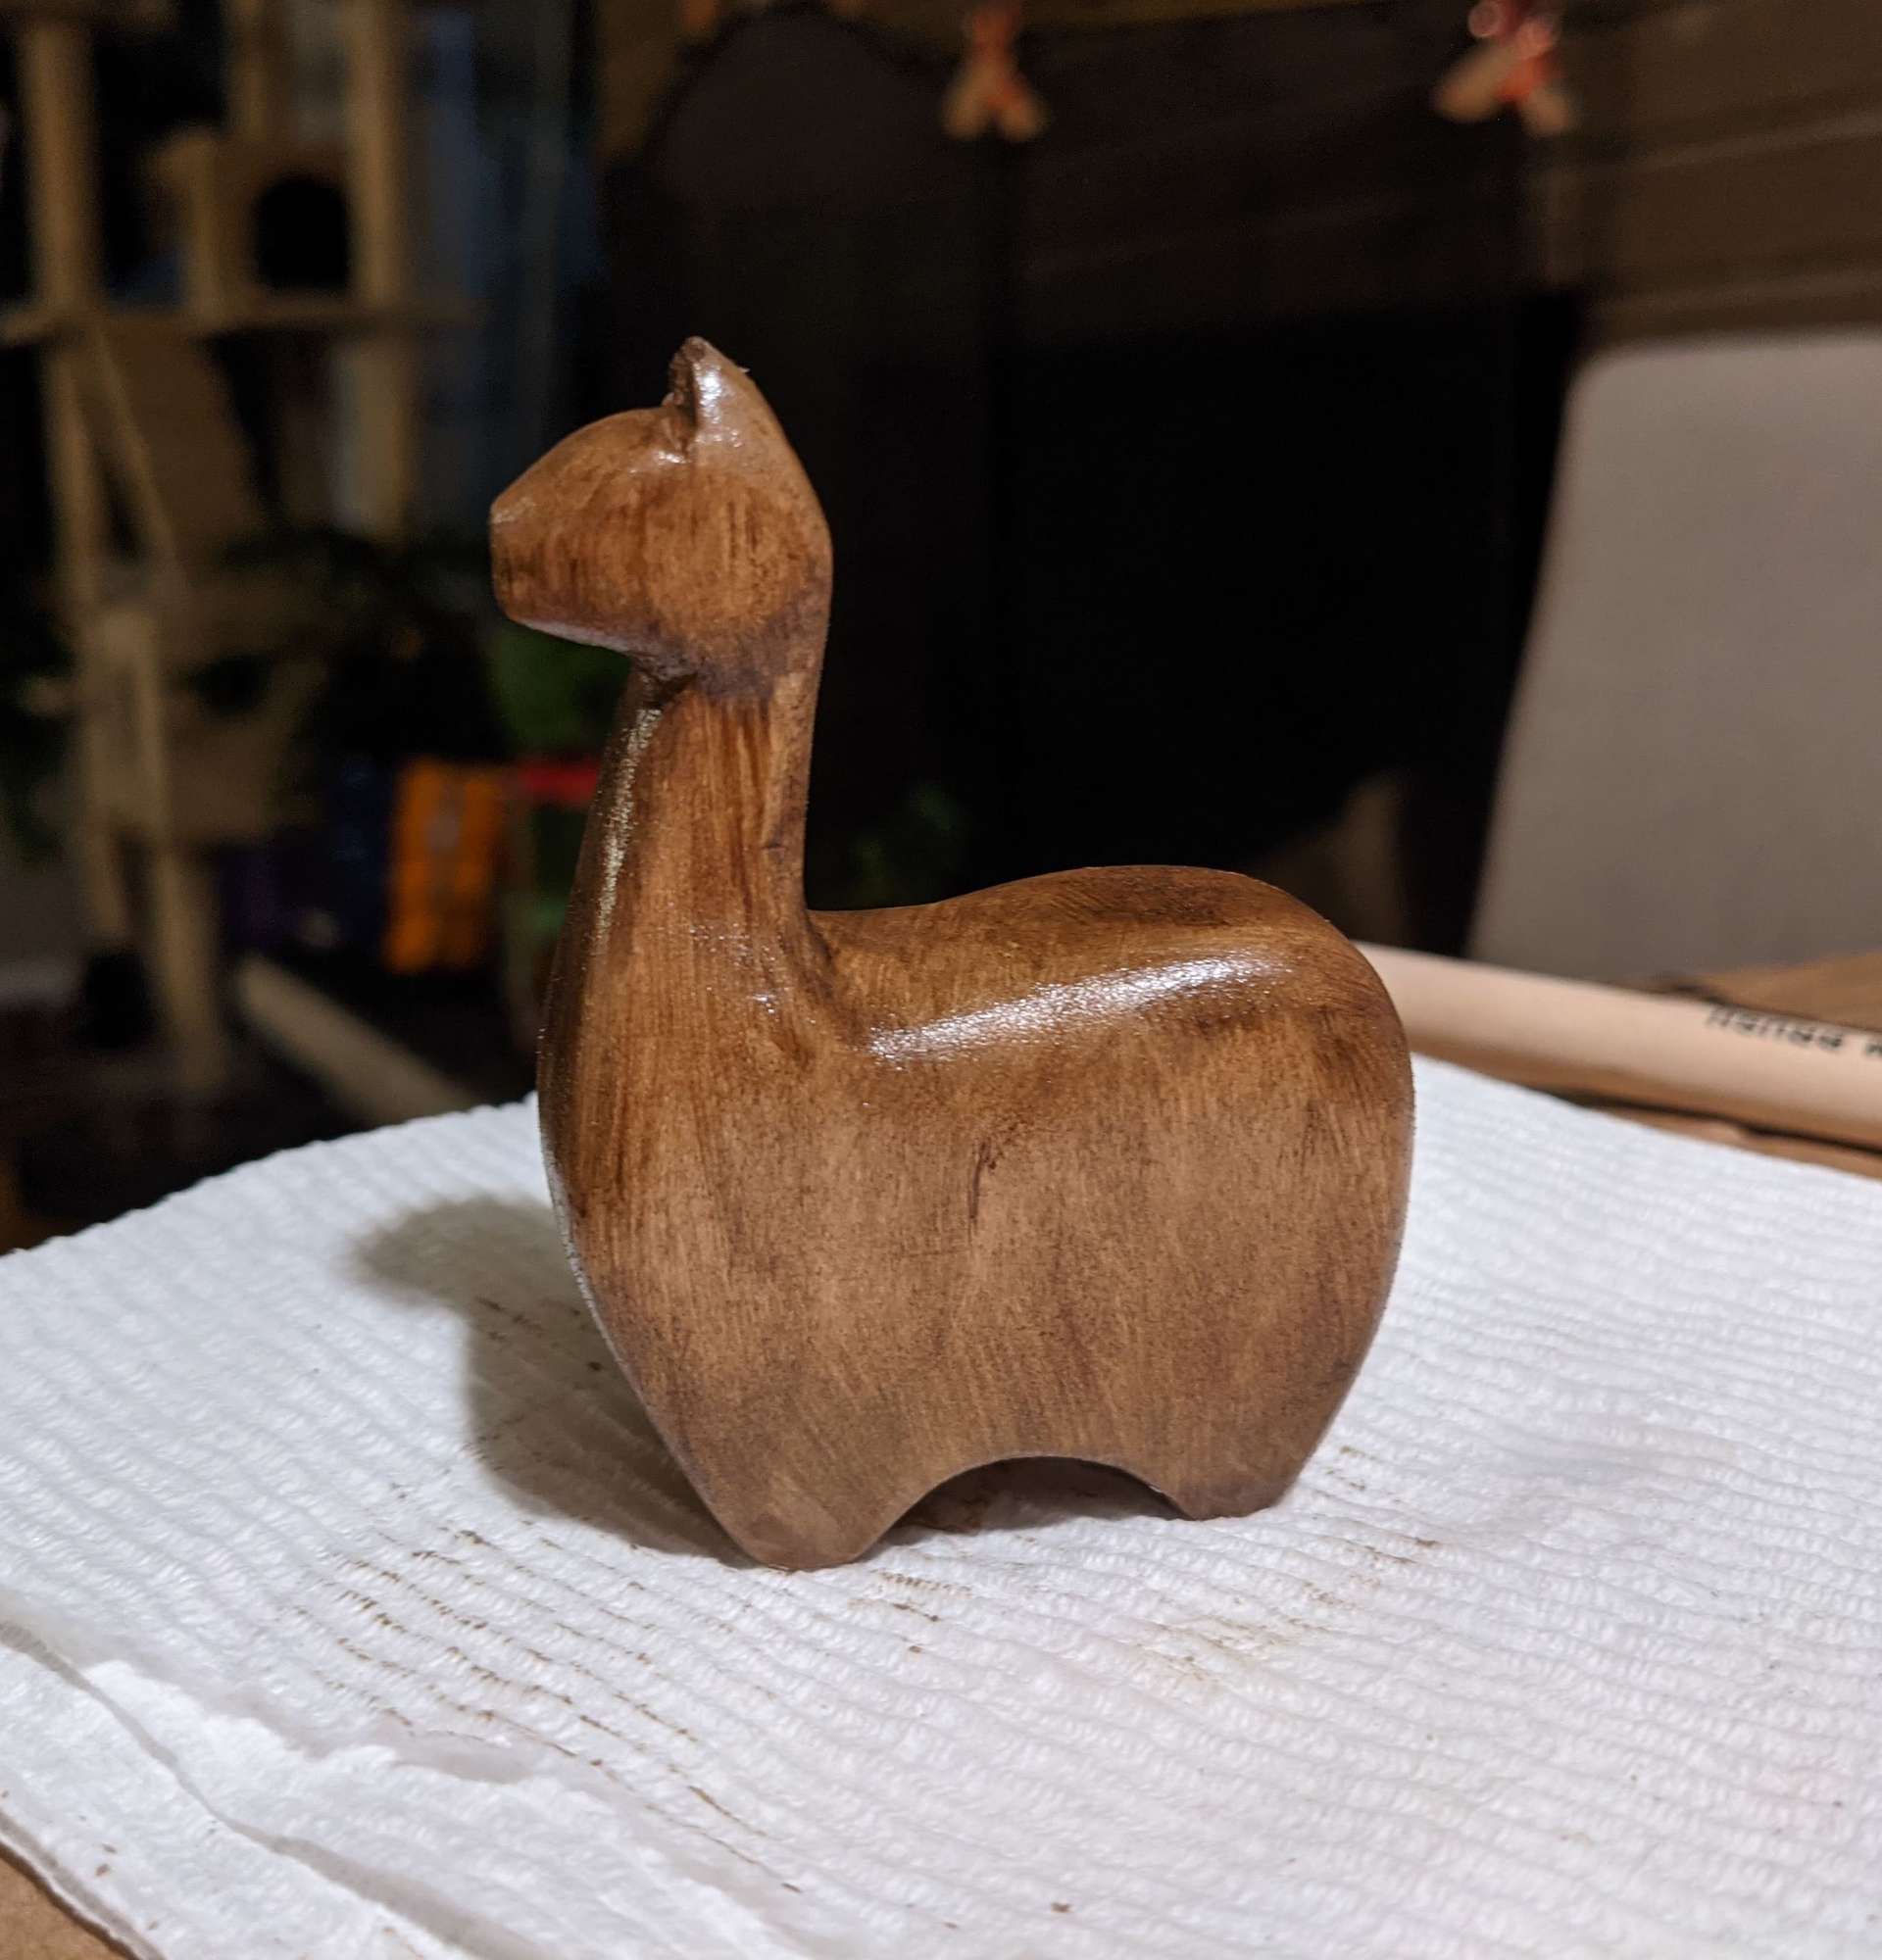 A stylized llama